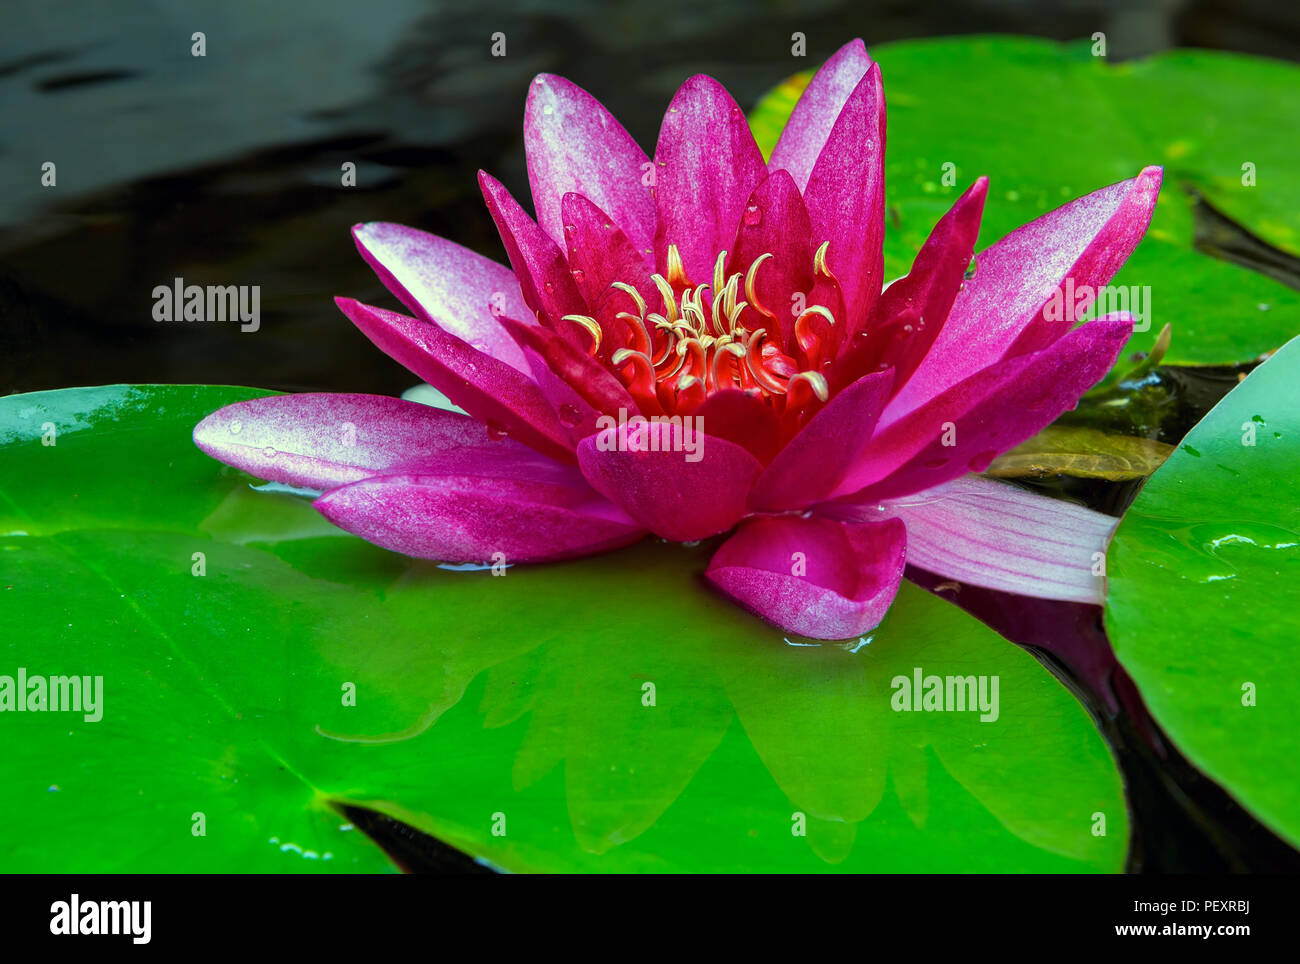 Pink Water Lily flor que florece en el jardín patio estanque durante el verano closeup Foto de stock